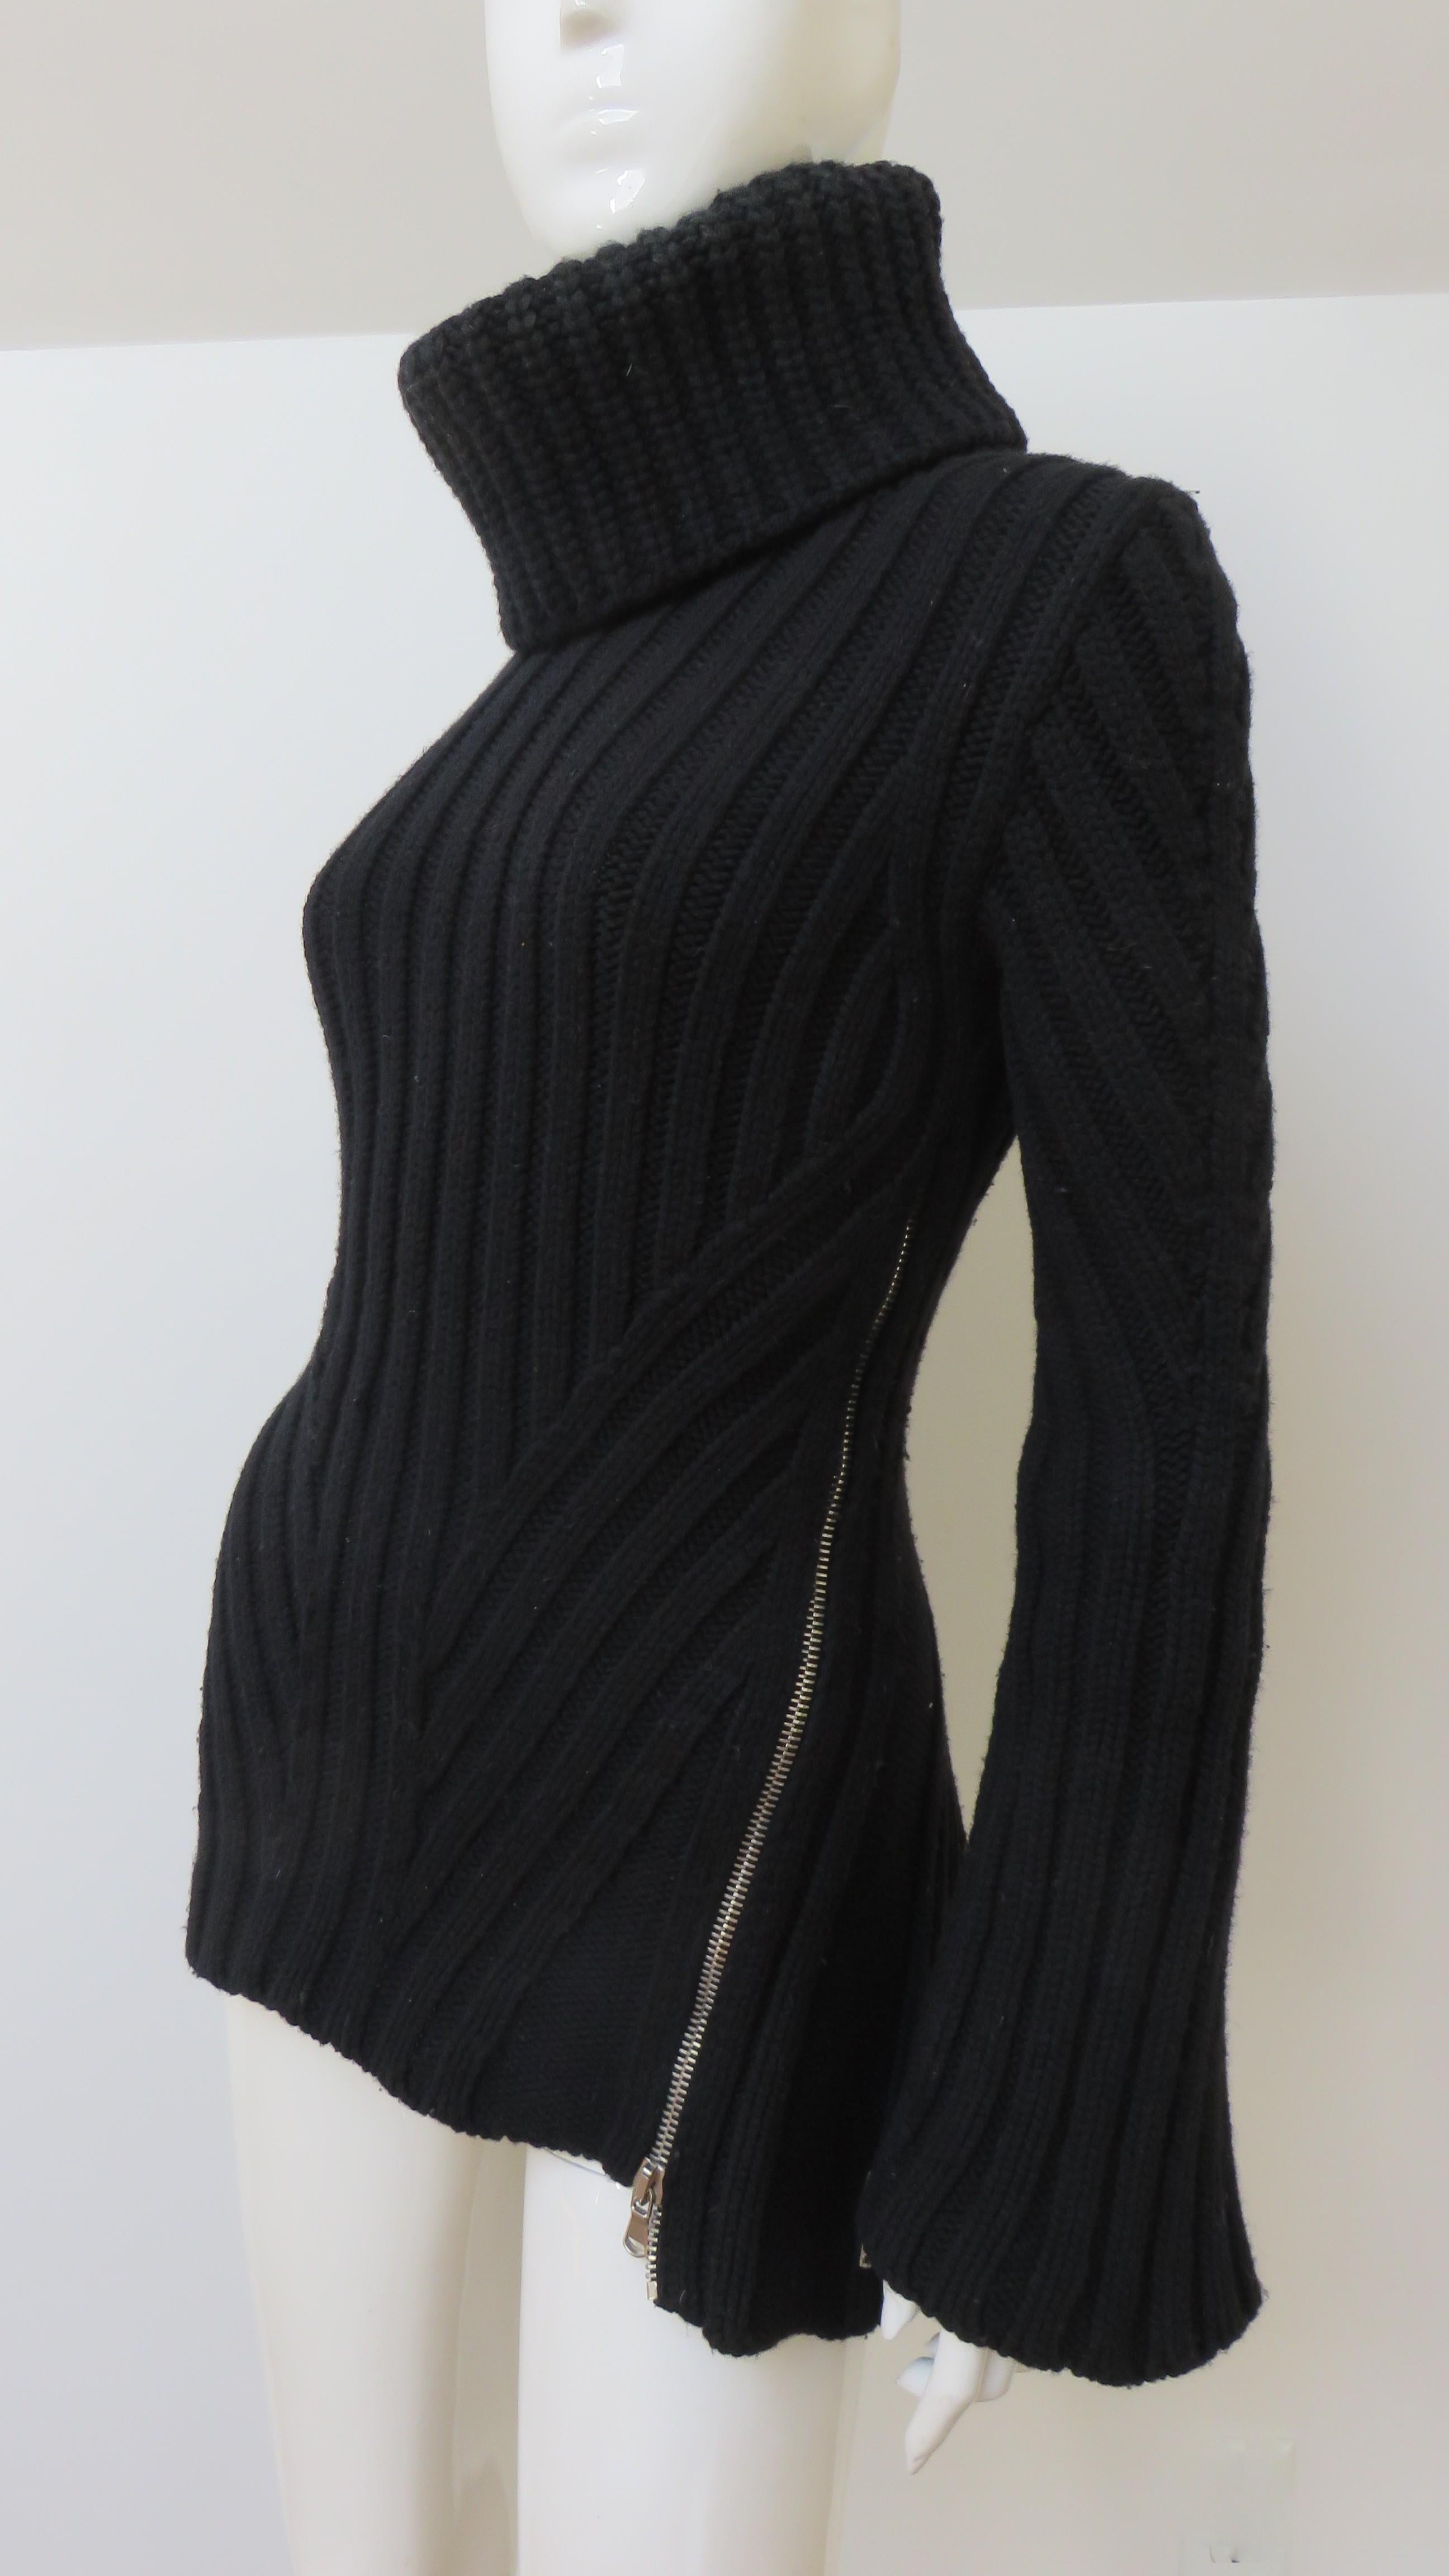 Black Alexander McQueen Turtleneck Sweater with Zippers